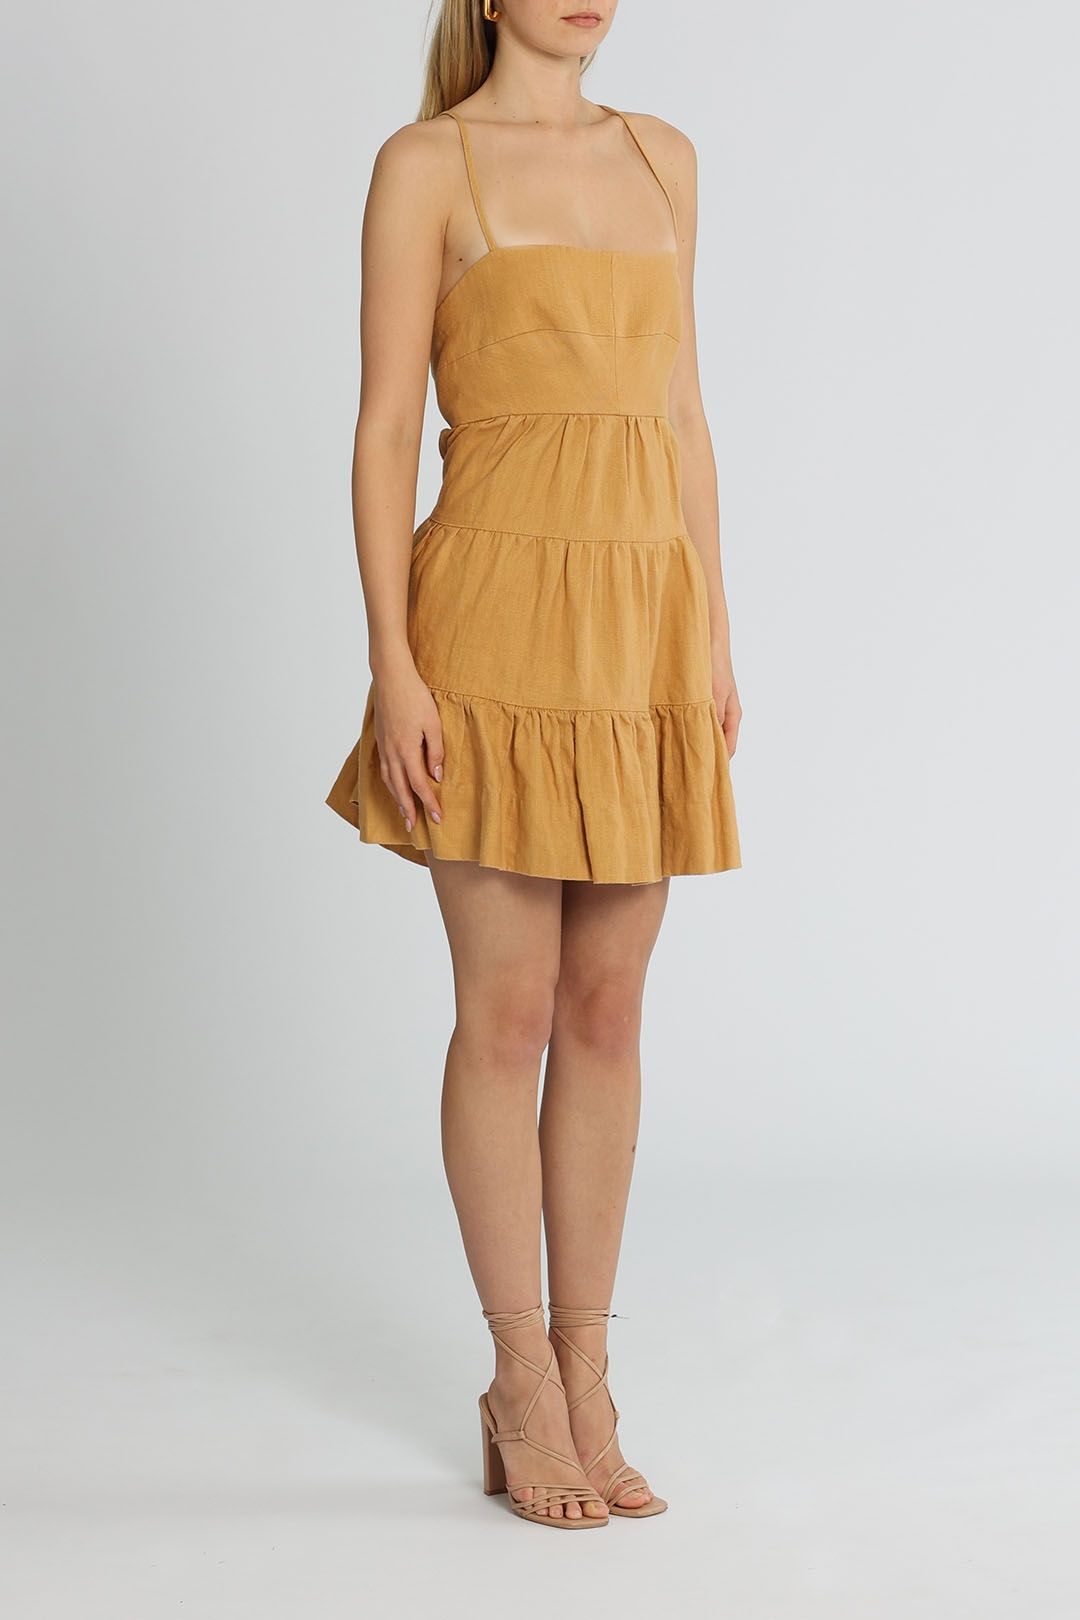 Shona Joy Aria Tiered Mini Dress Sleeveless